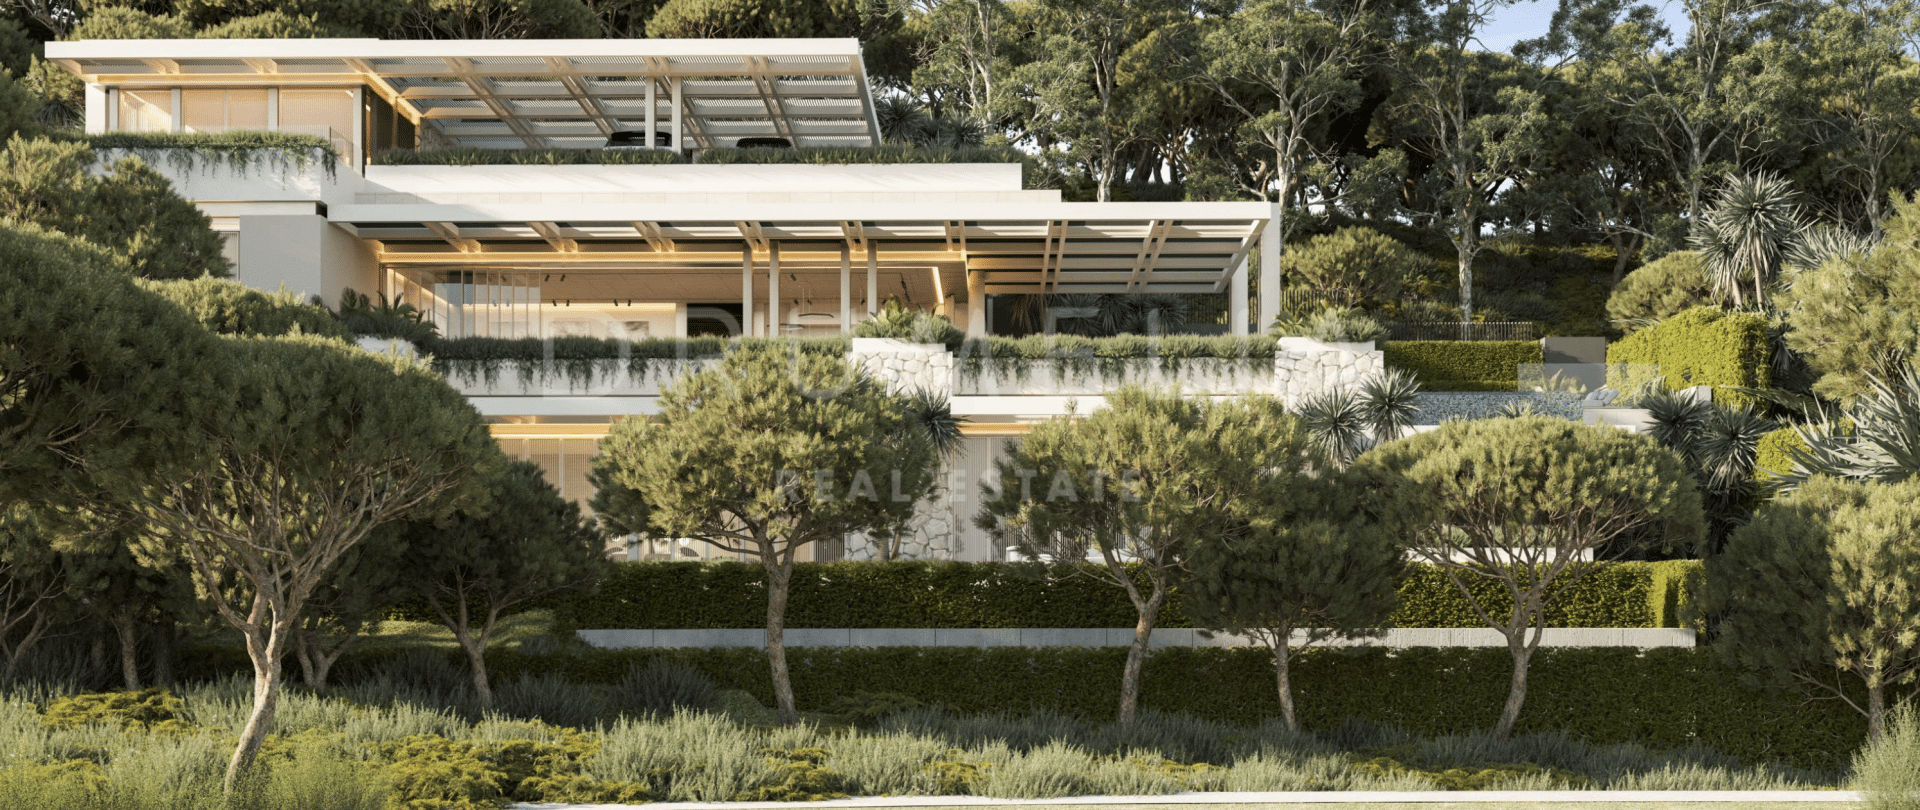 La Quinta 237 - Excelente parcela con proyecto de diseño y licencia para construir una casa moderna en La Reserva de la Quinta, Benahavis